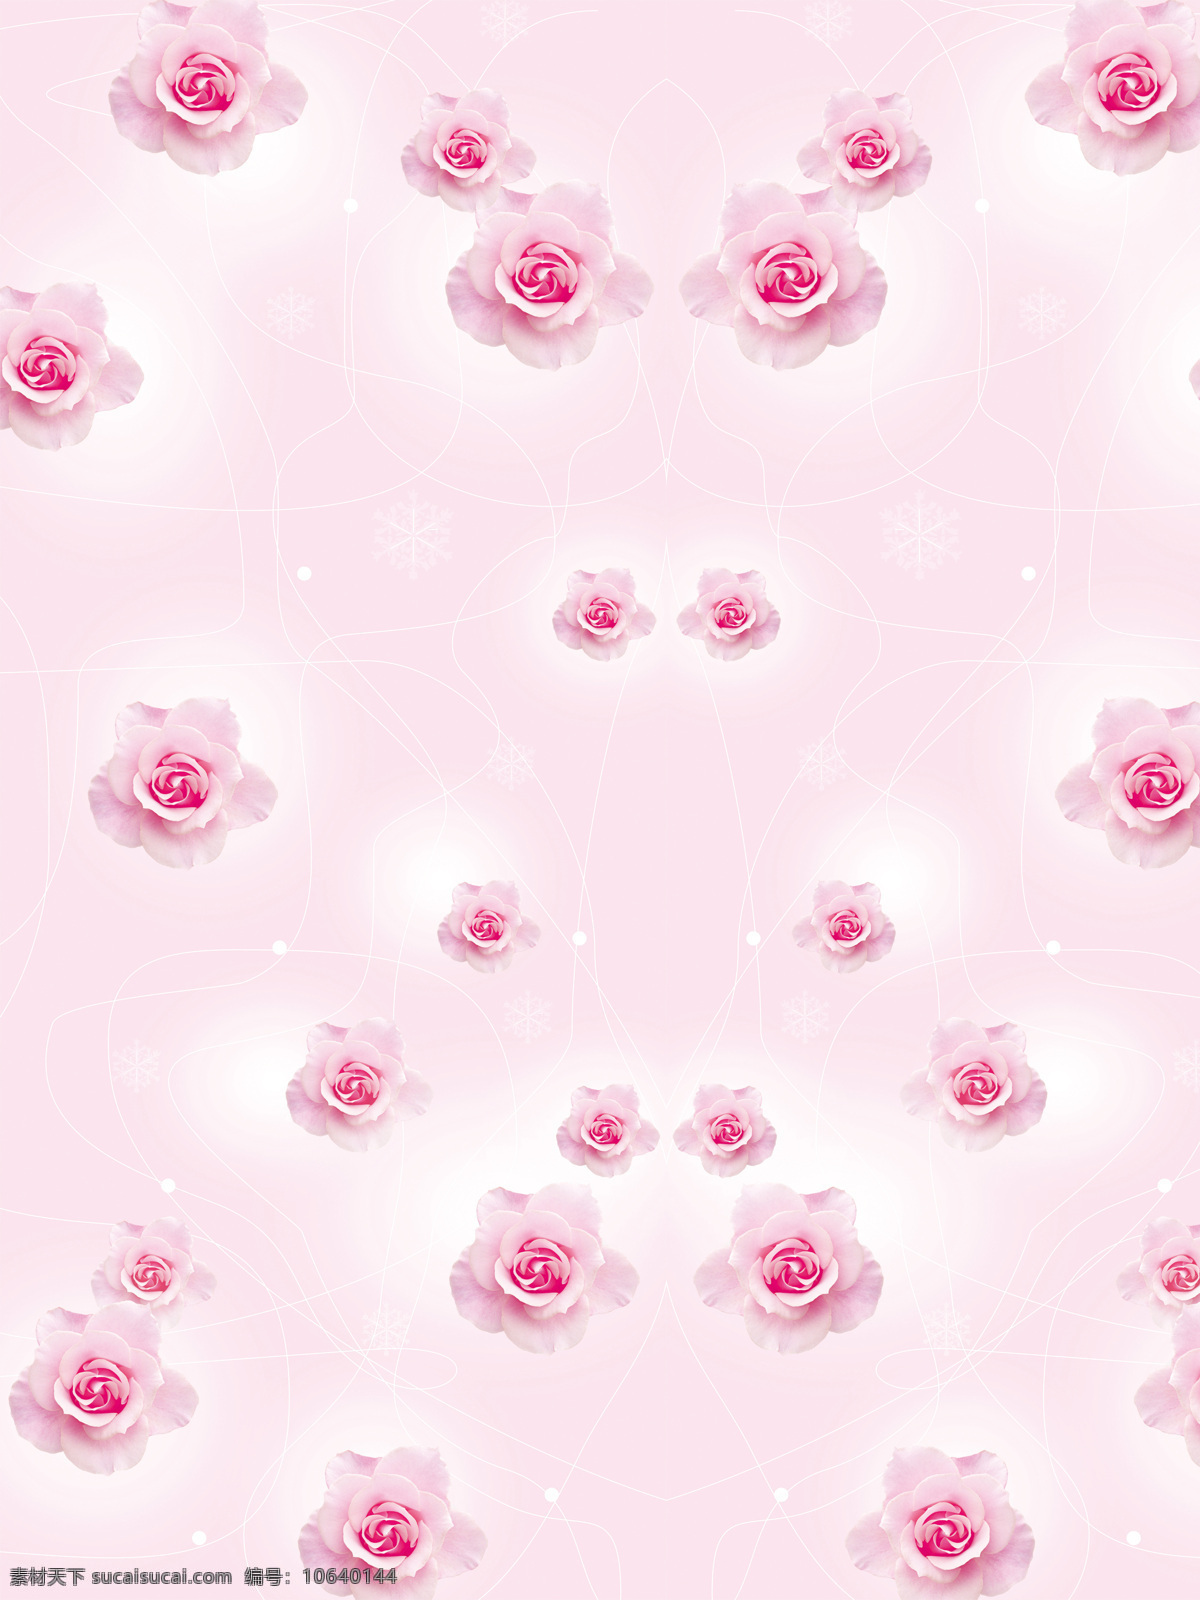 玫瑰情缘 玫瑰花 爱情 象征 背景 浪漫 花 粉色 玫瑰红色 玫瑰 爱人 温馨 黄 红心 风景 生活 旅游餐饮